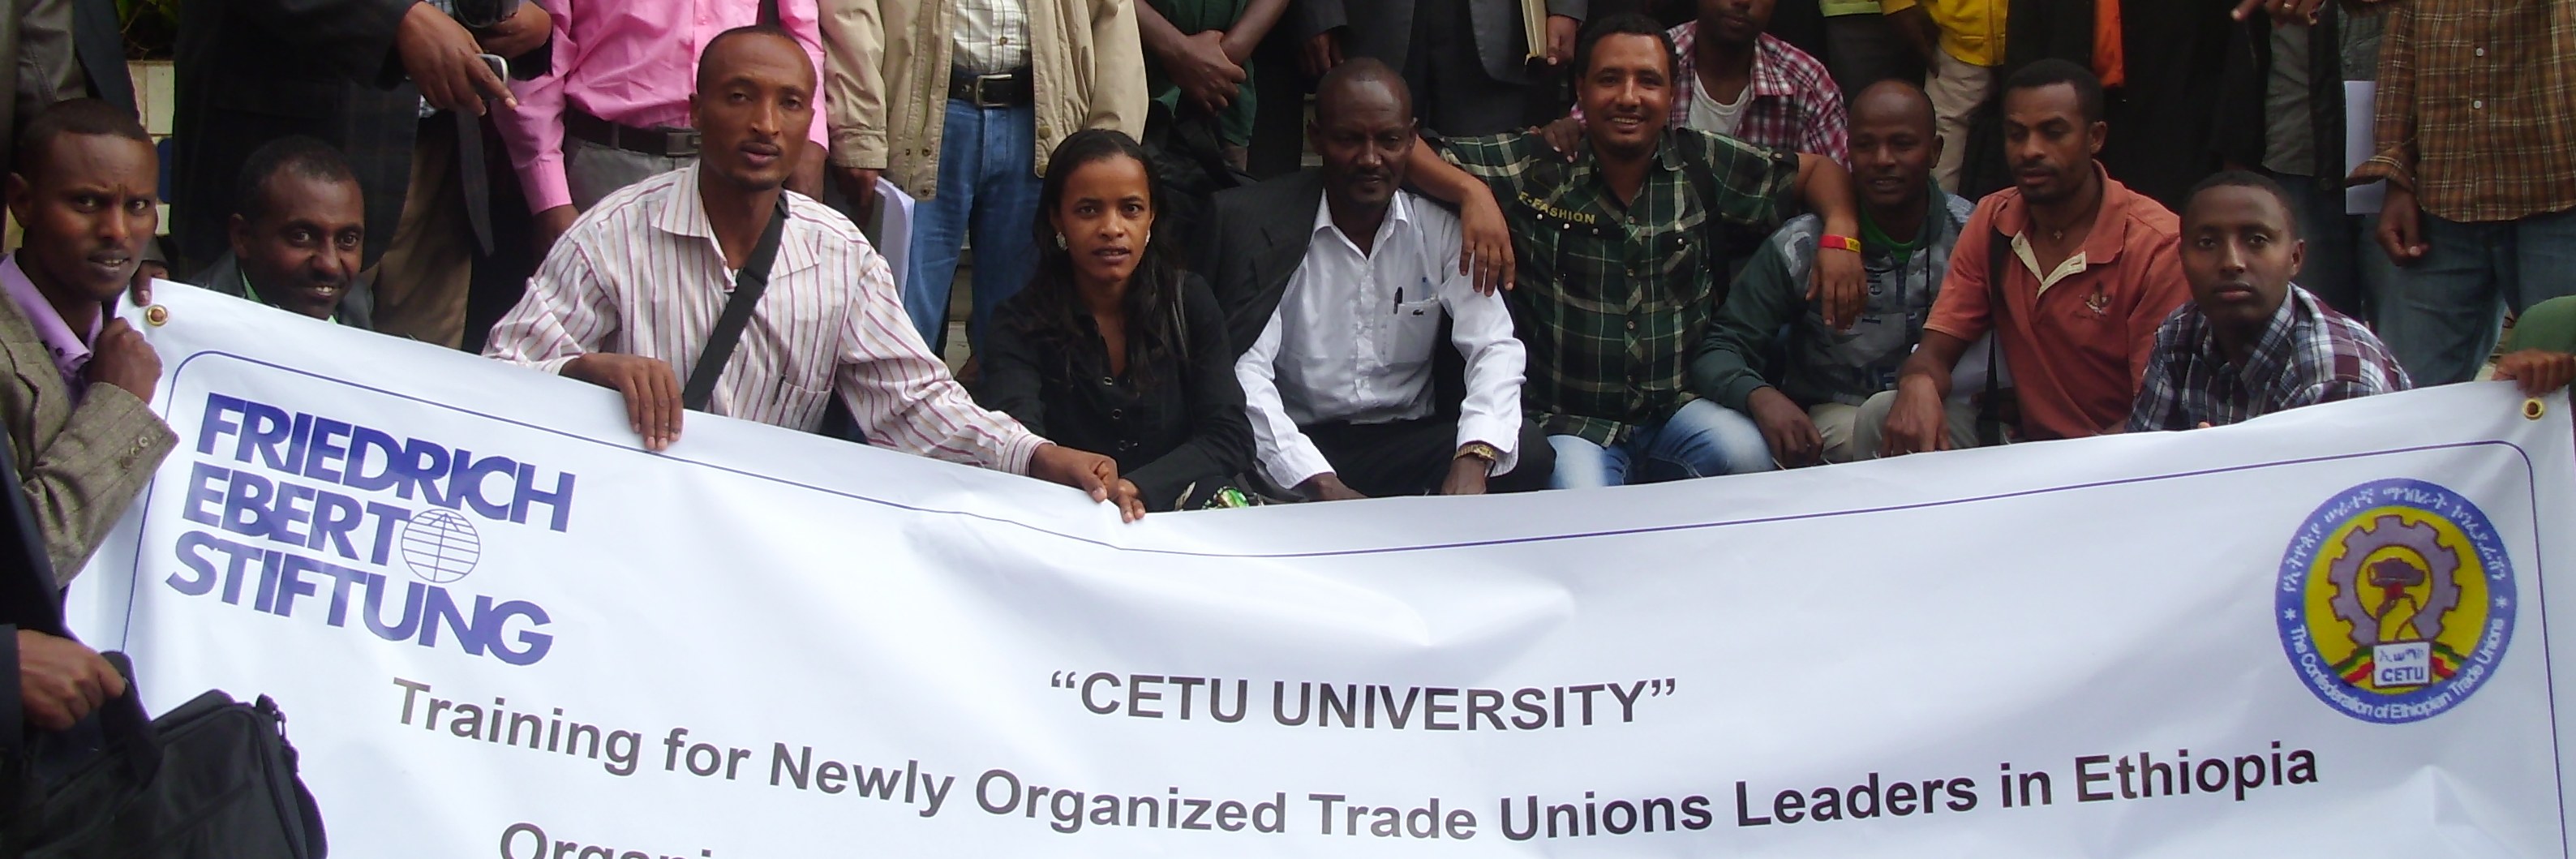 Kooperationsseminar mit dem Gewerkschaftsdachverband CETU, Äthiopien 2013